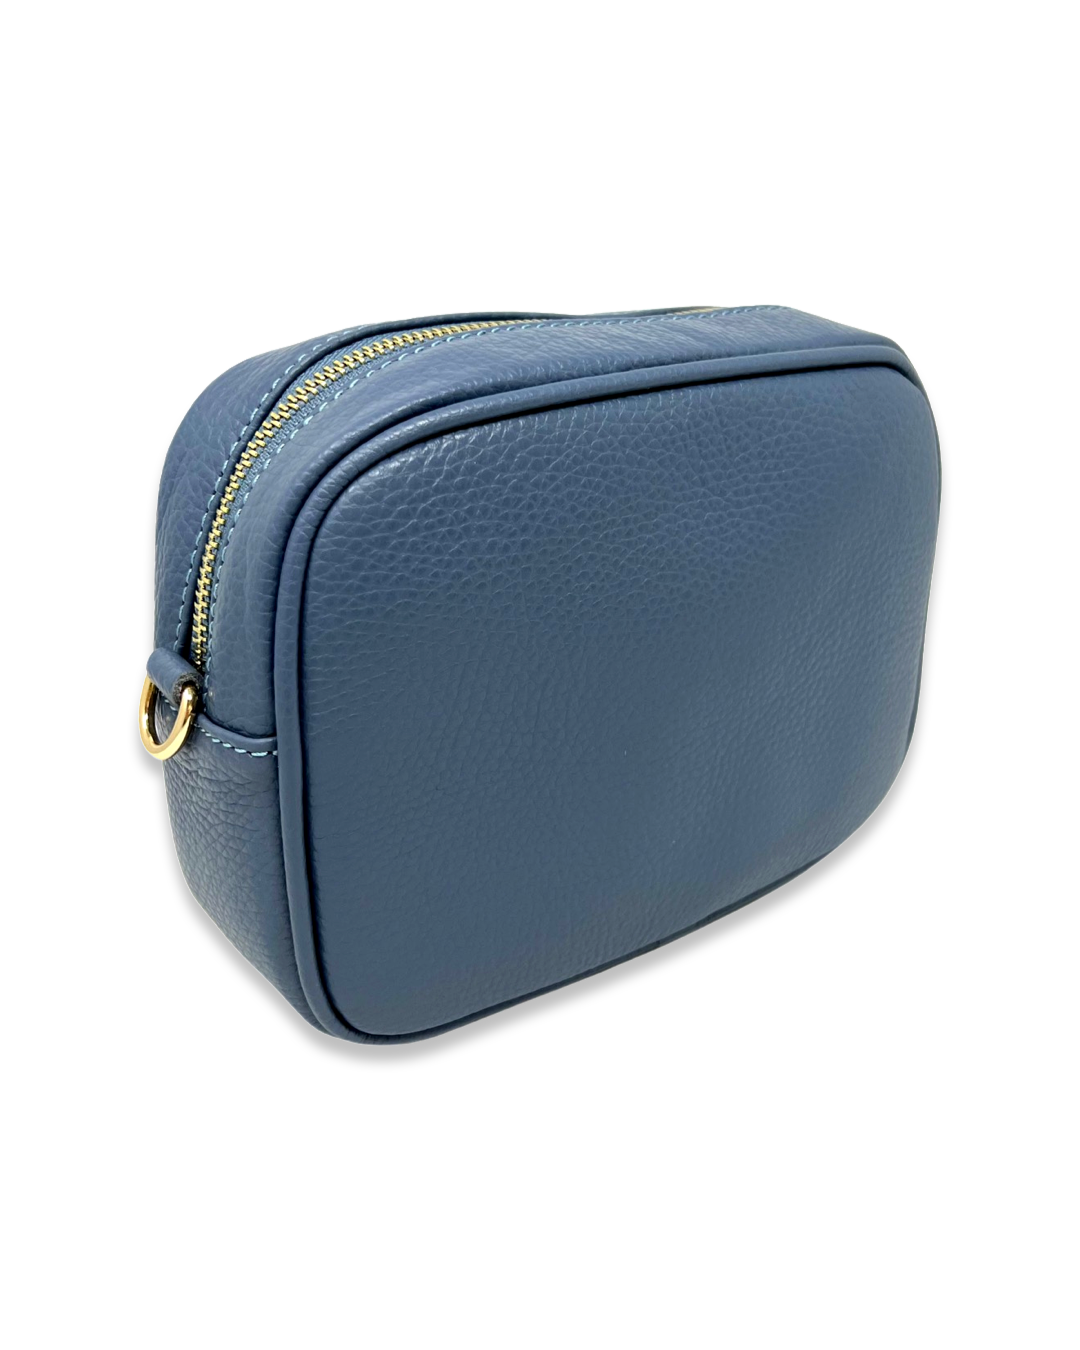 Firenze Bag in Denim Blue